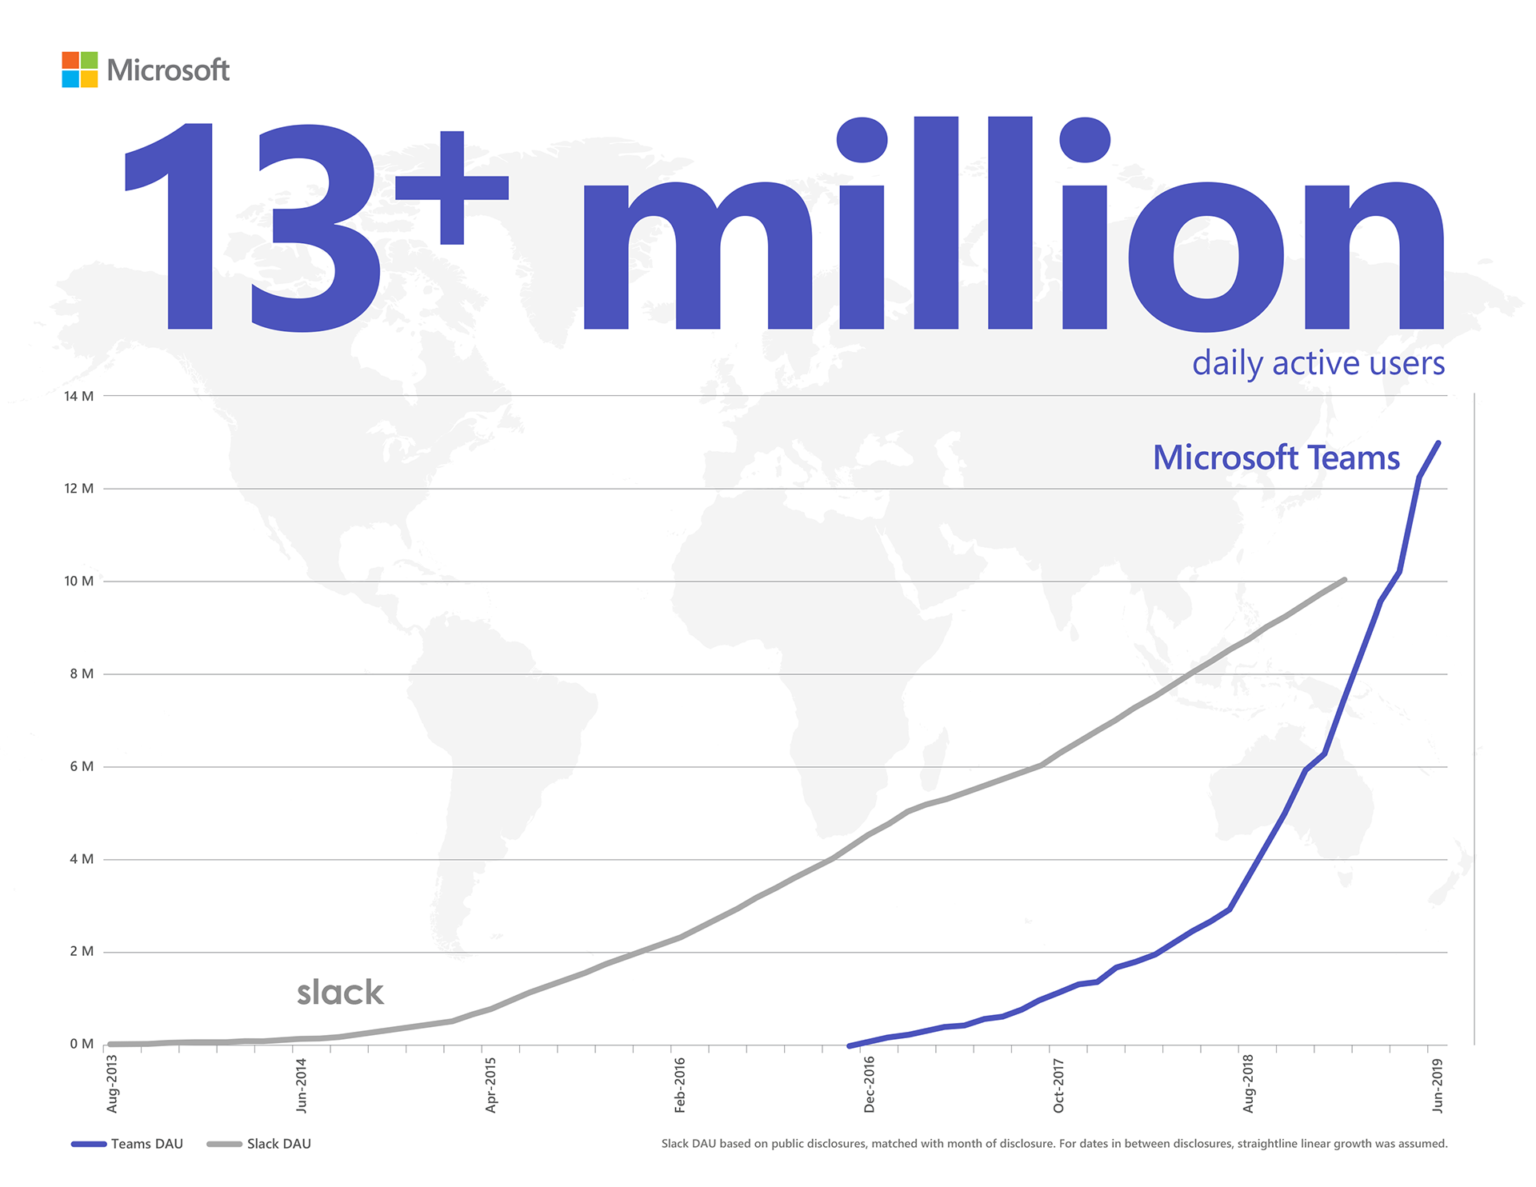 Infografik viser, at Microsoft Teams overgår Slack i daglige aktive brugere med 13+ millioner. Slack DAU baseret på offentlige undersøgelser, matchet med måneden for undersøgelsen. For datoer mellem undersøgelserne blev der antaget en lineær vækst.